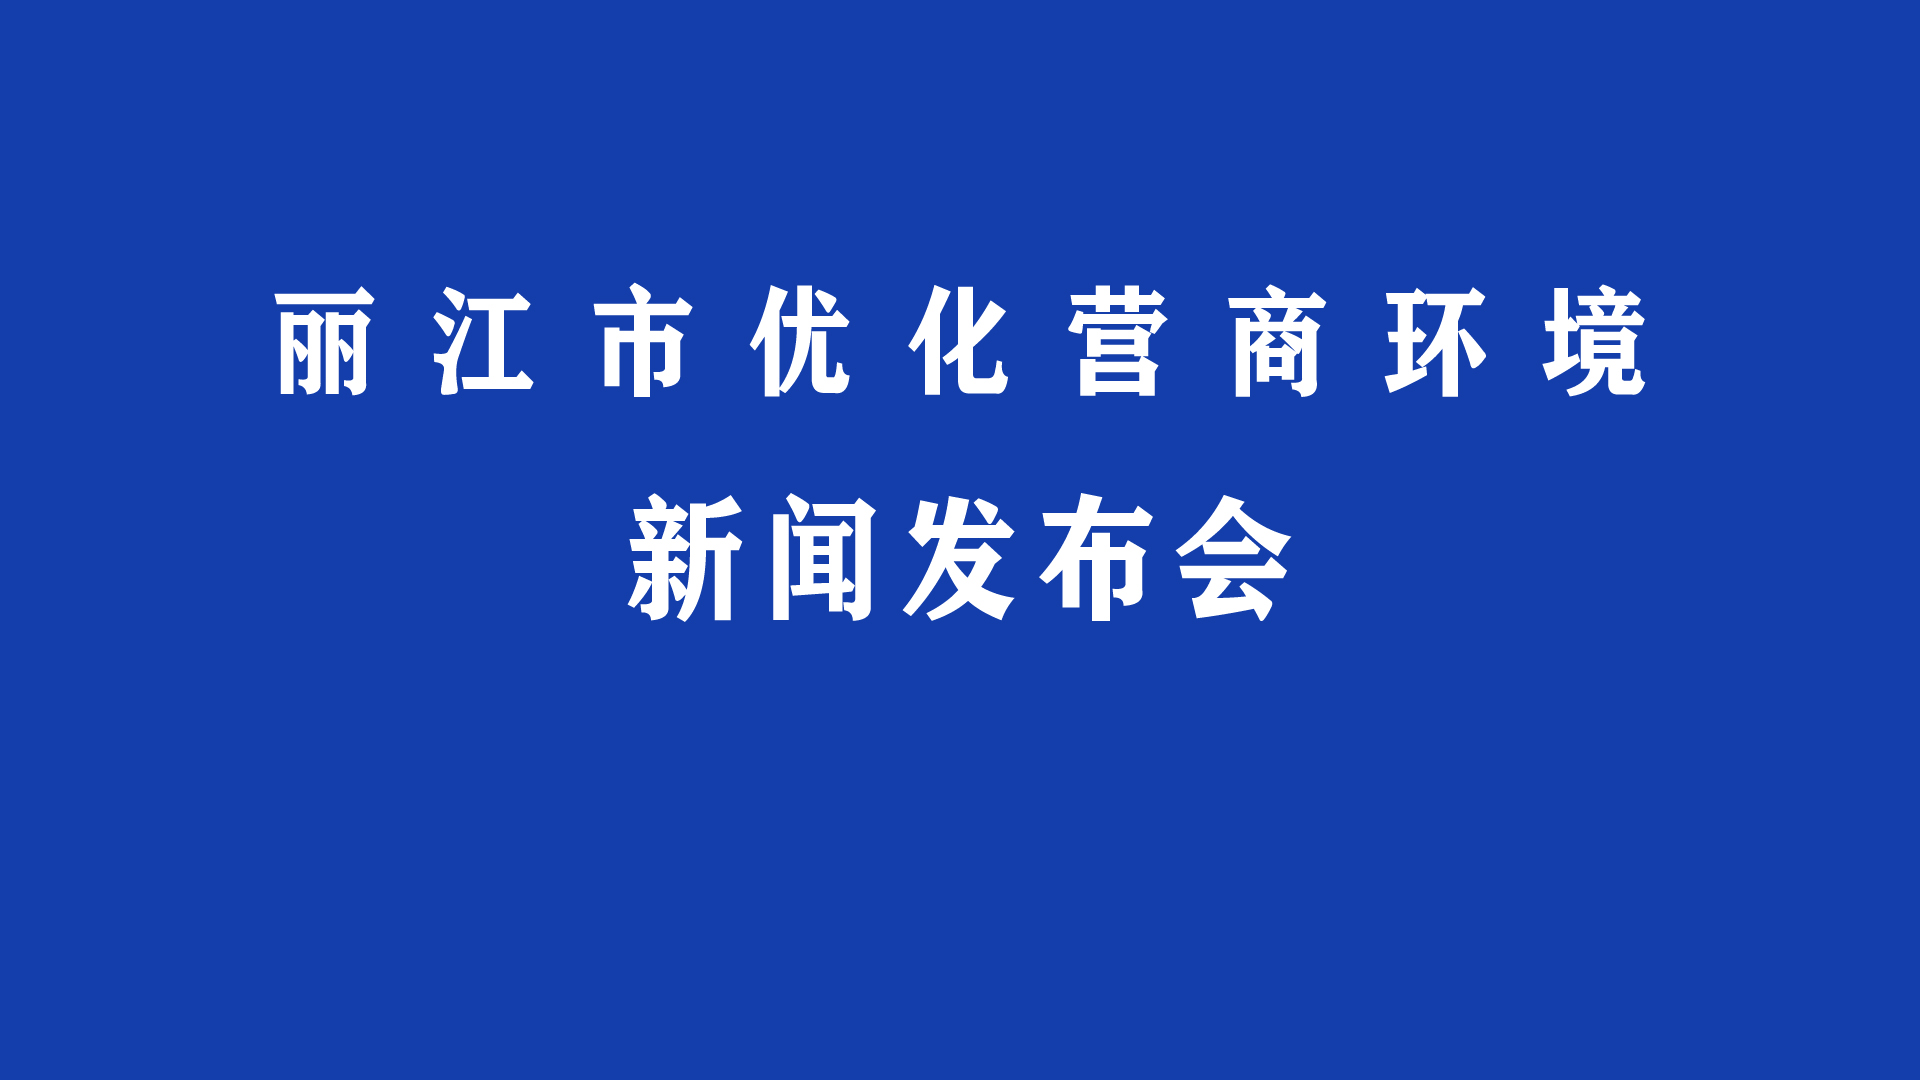 丽江市优化营商环境新闻发布会（第五场）